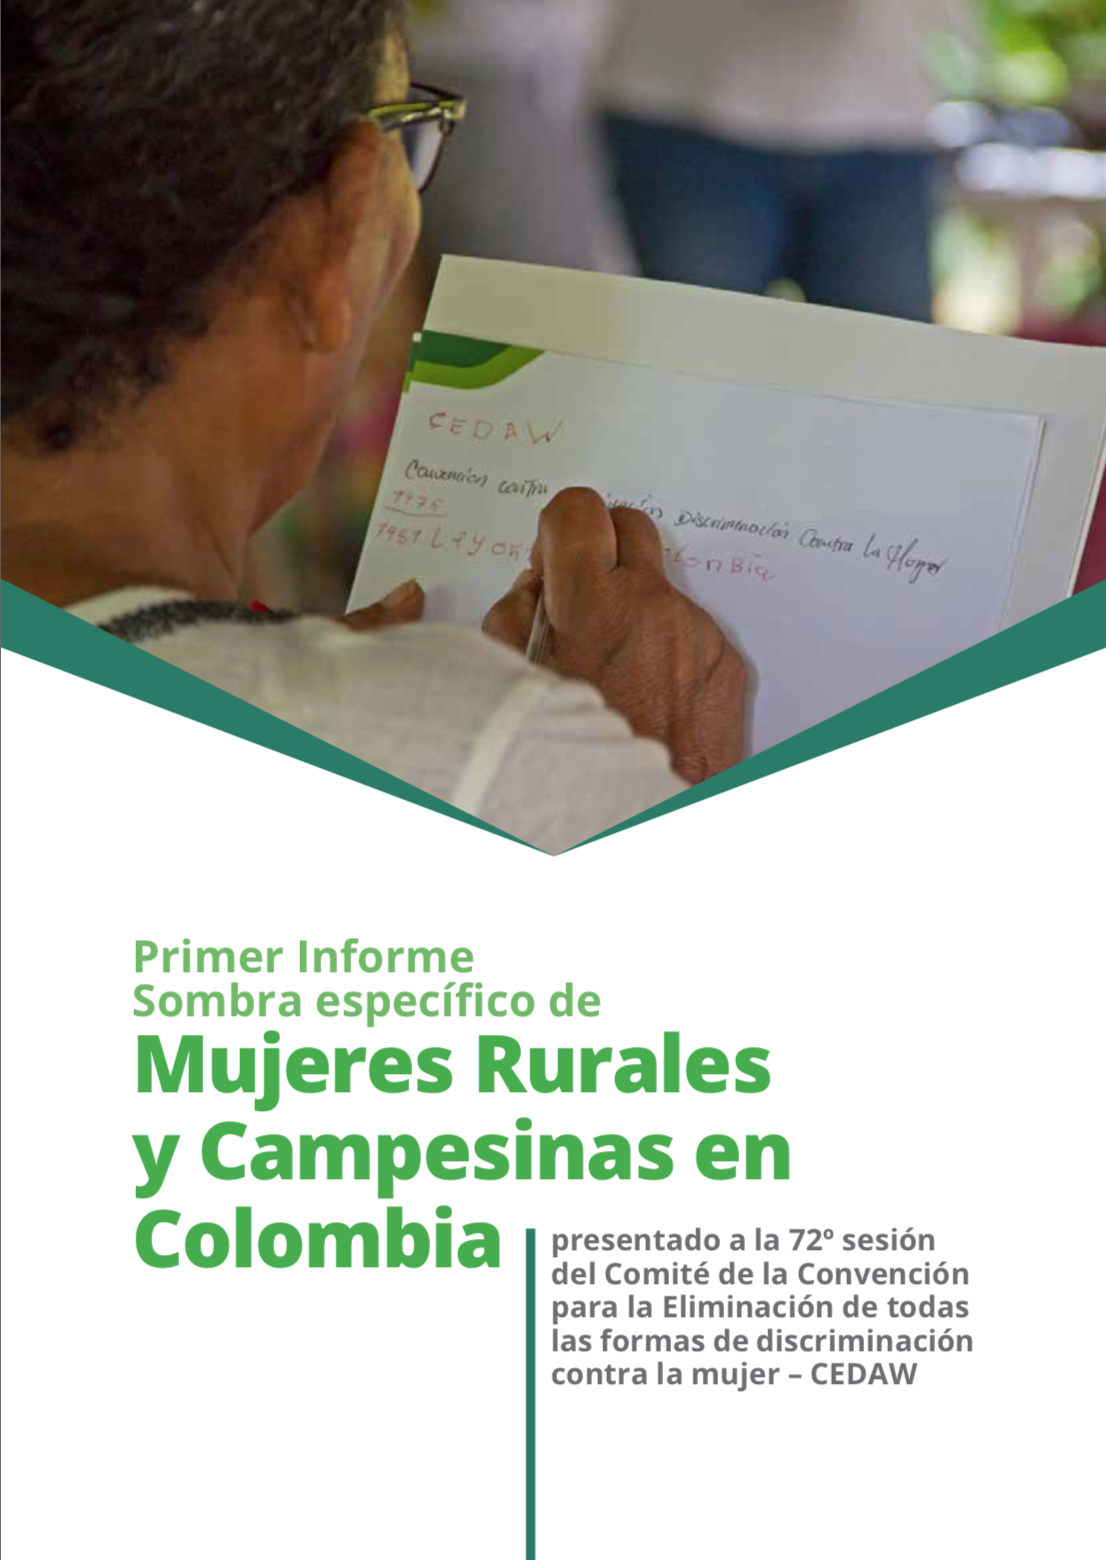 Gráfica alusiva a Primer Informe Sombra específico de Mujeres Rurales y Campesinas en Colombia. Presentado a la 72o sesión del Comité de la Convención para la eliminación de todas las formas de discriminación contra la mujer – CEDAW.  